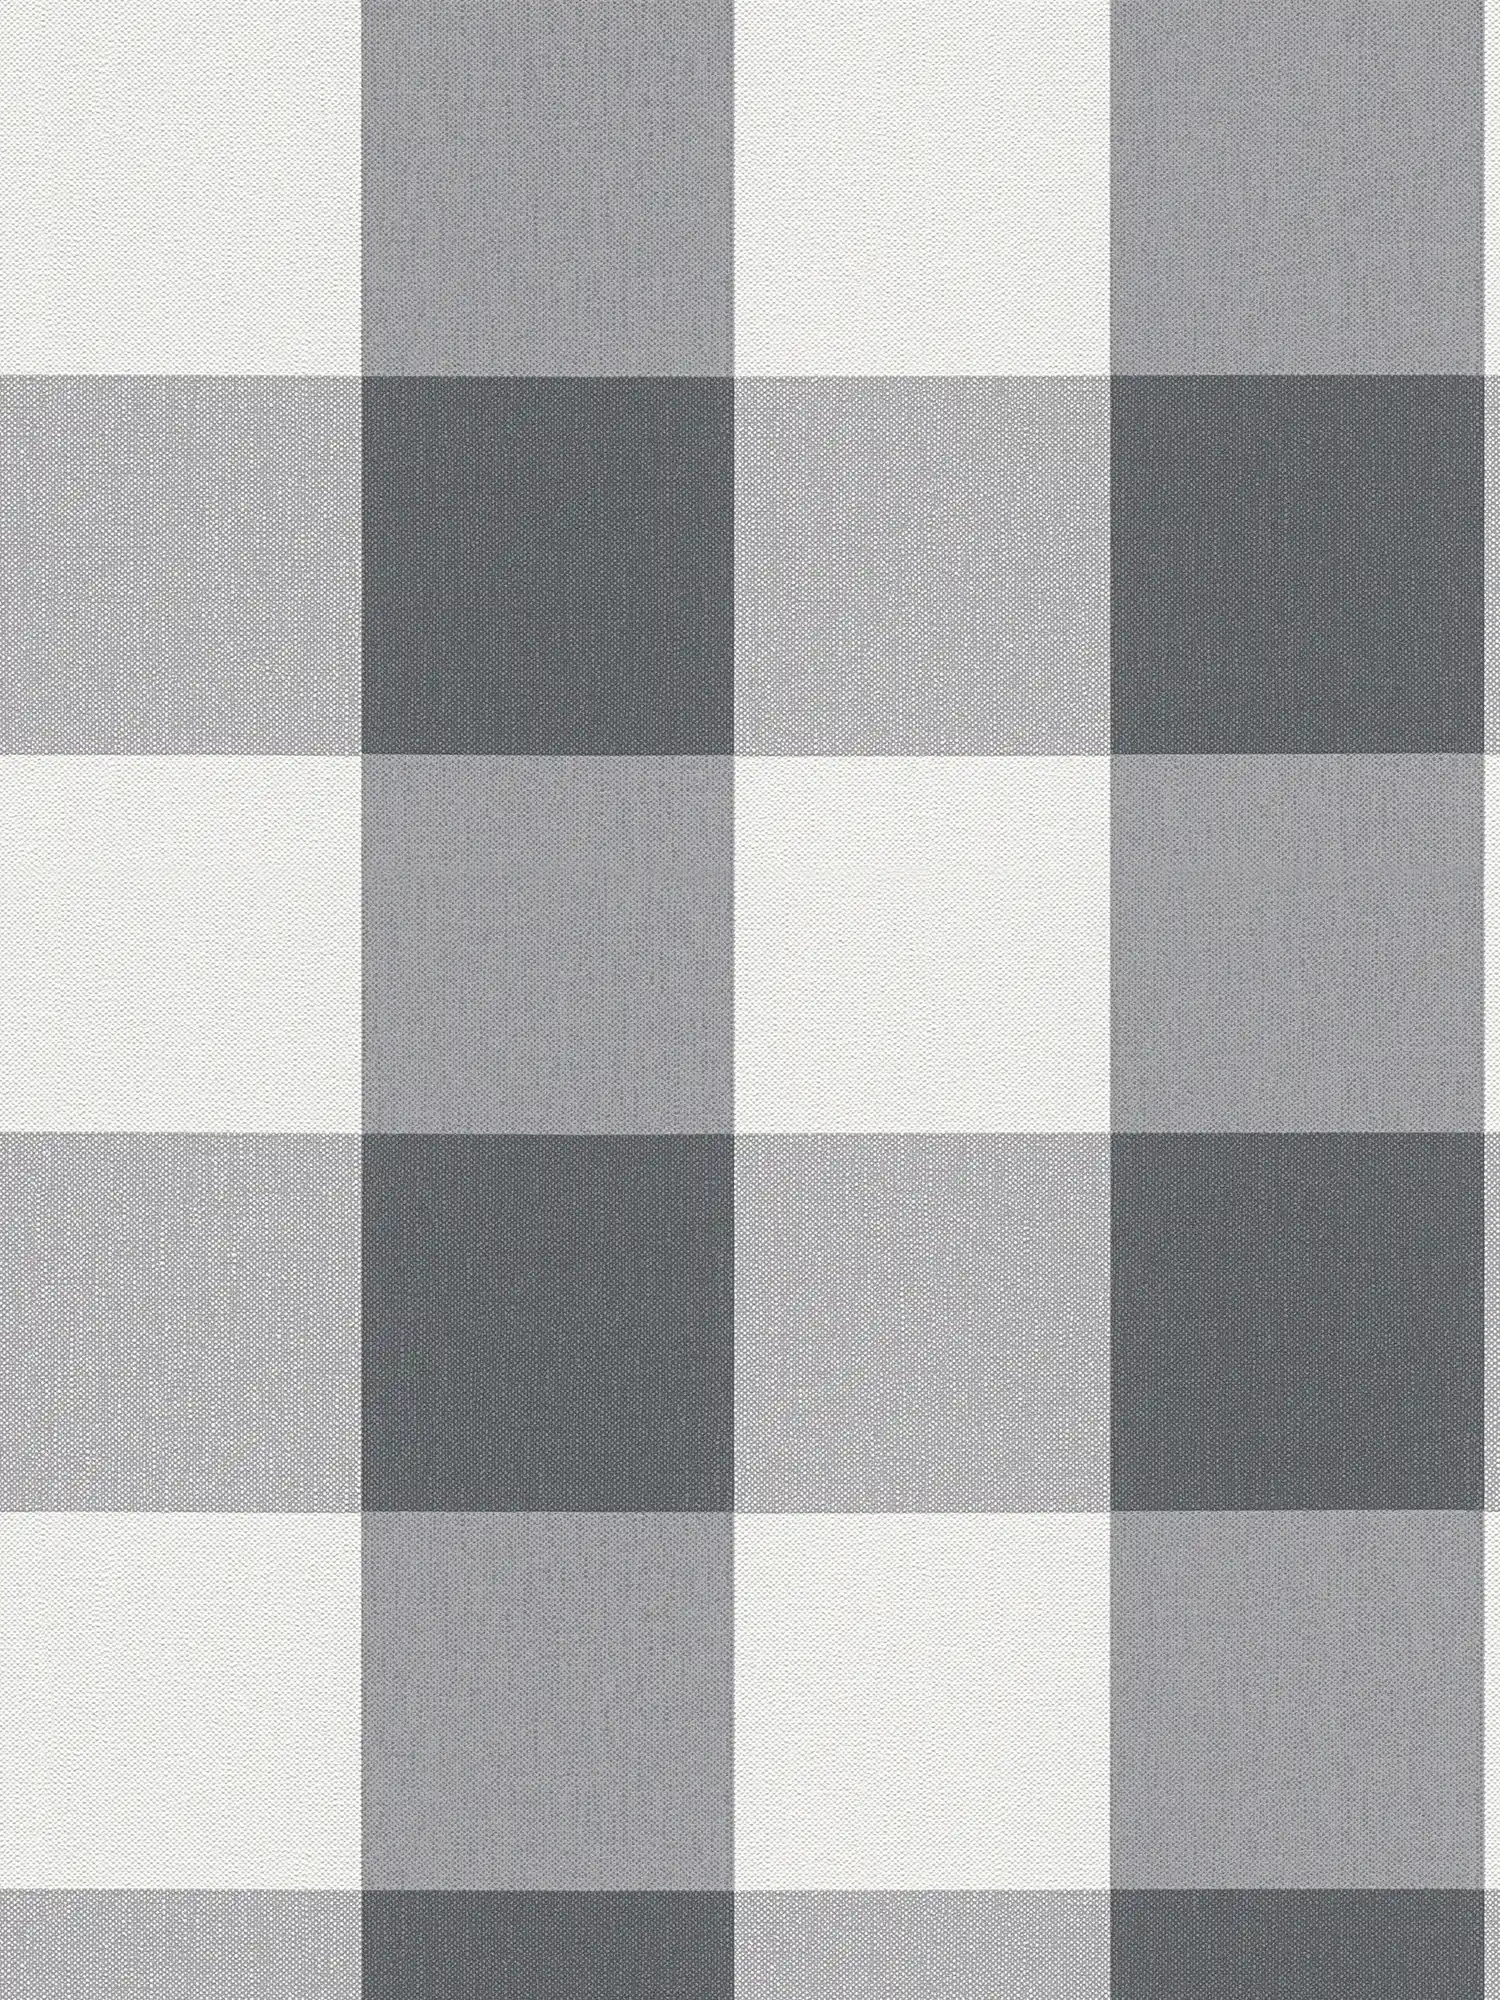 Karierte Tapete mit Textil-Look in harmonischen Farben – Weiß, Grau
